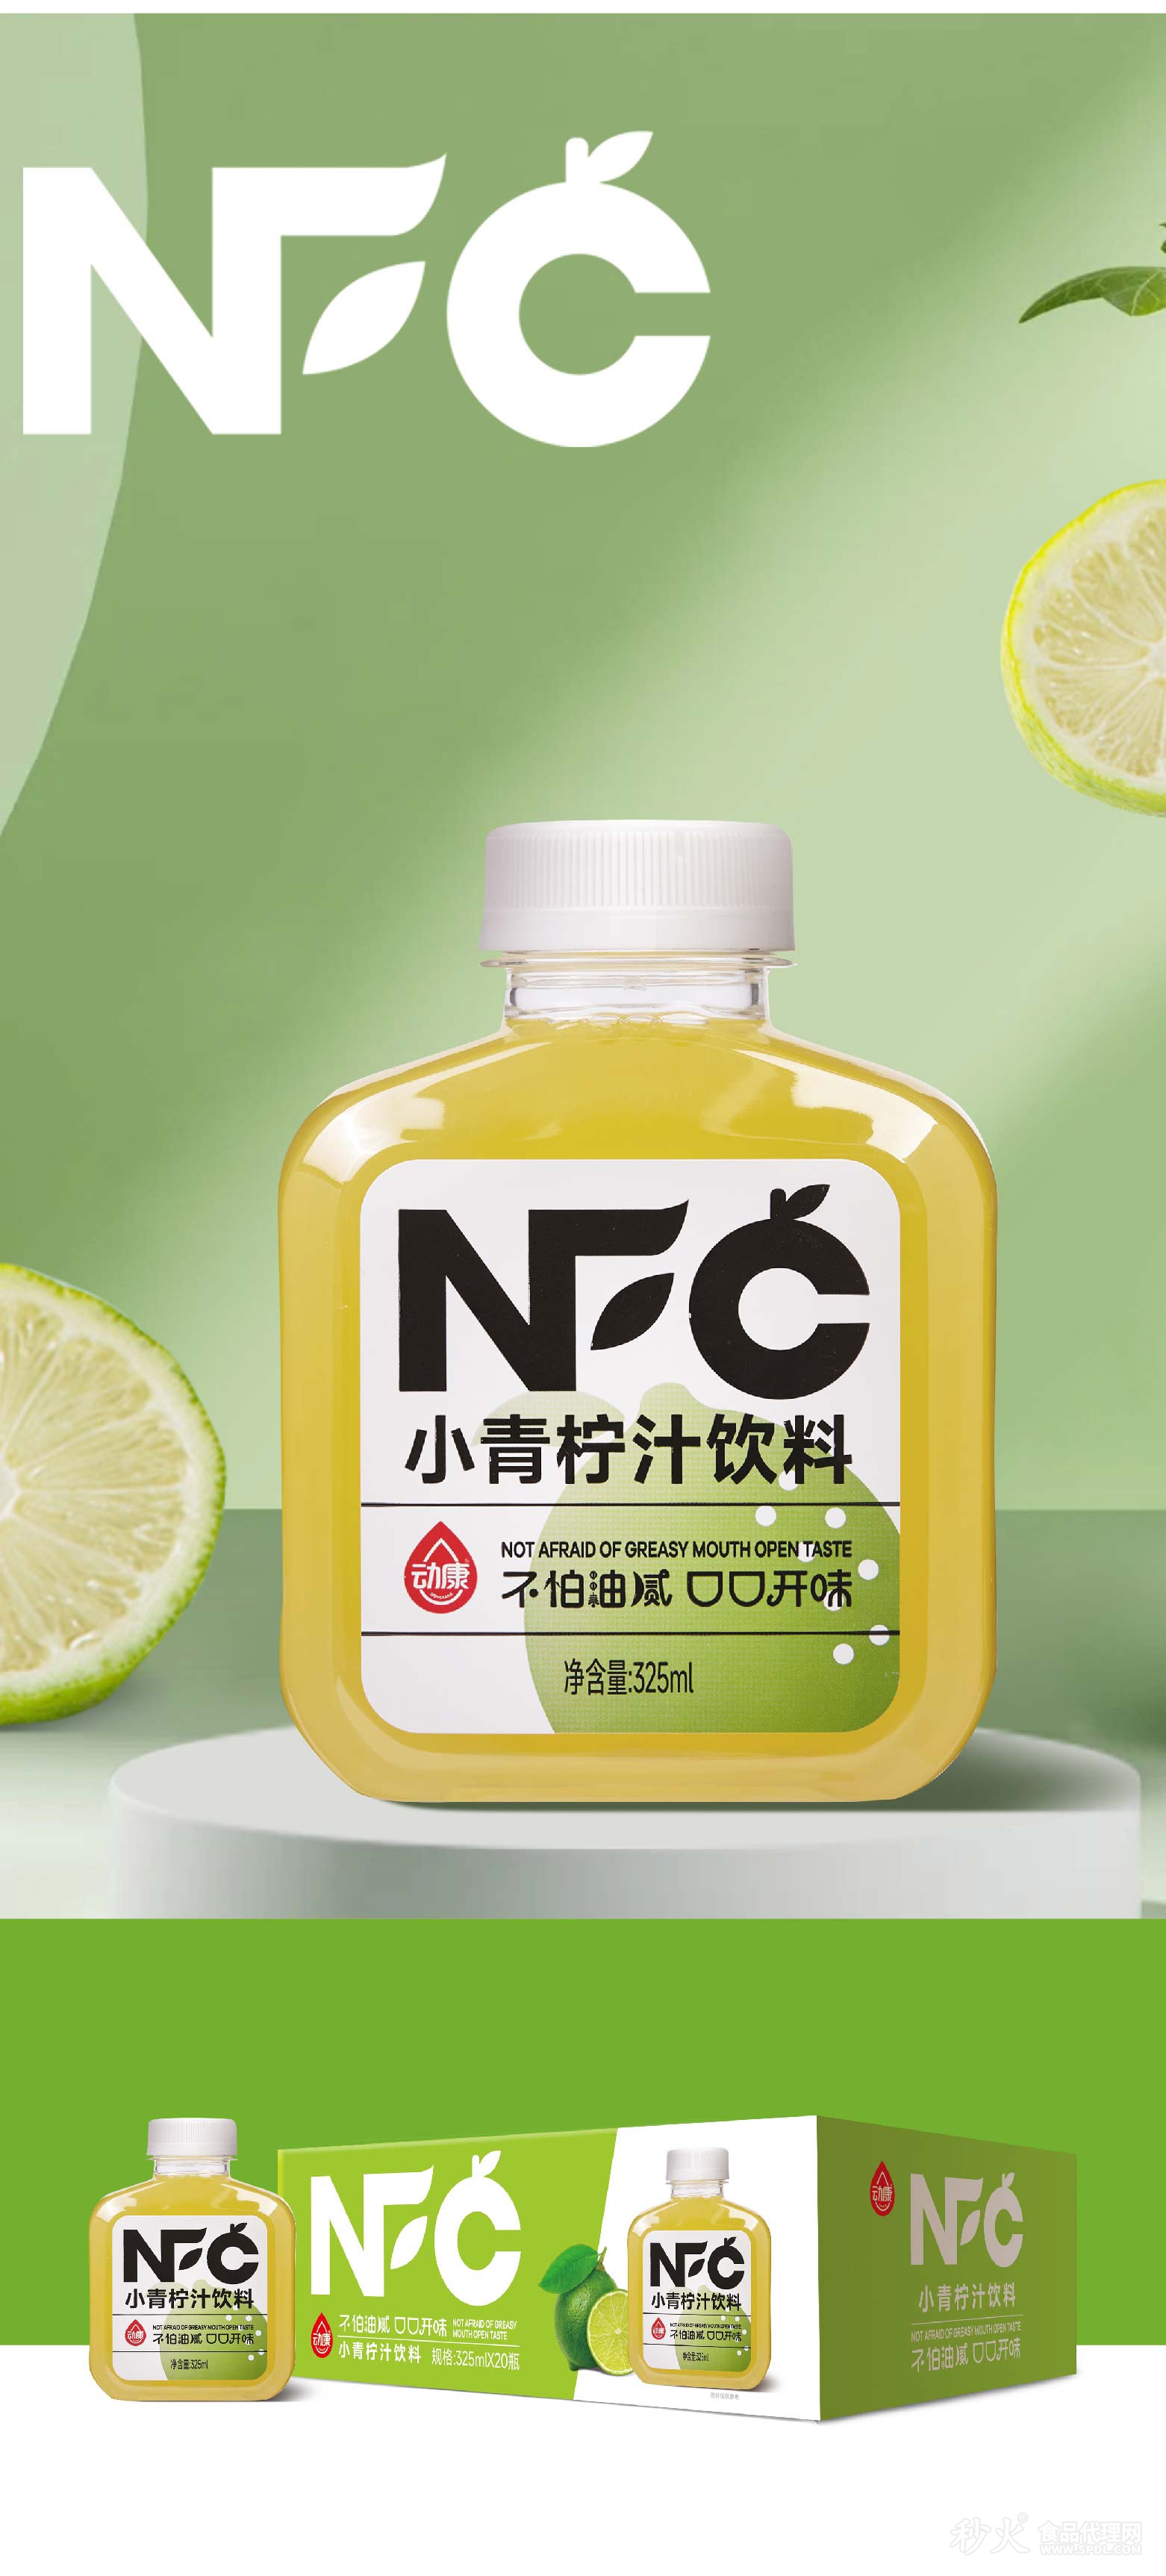 动康NFC小青柠汁饮料